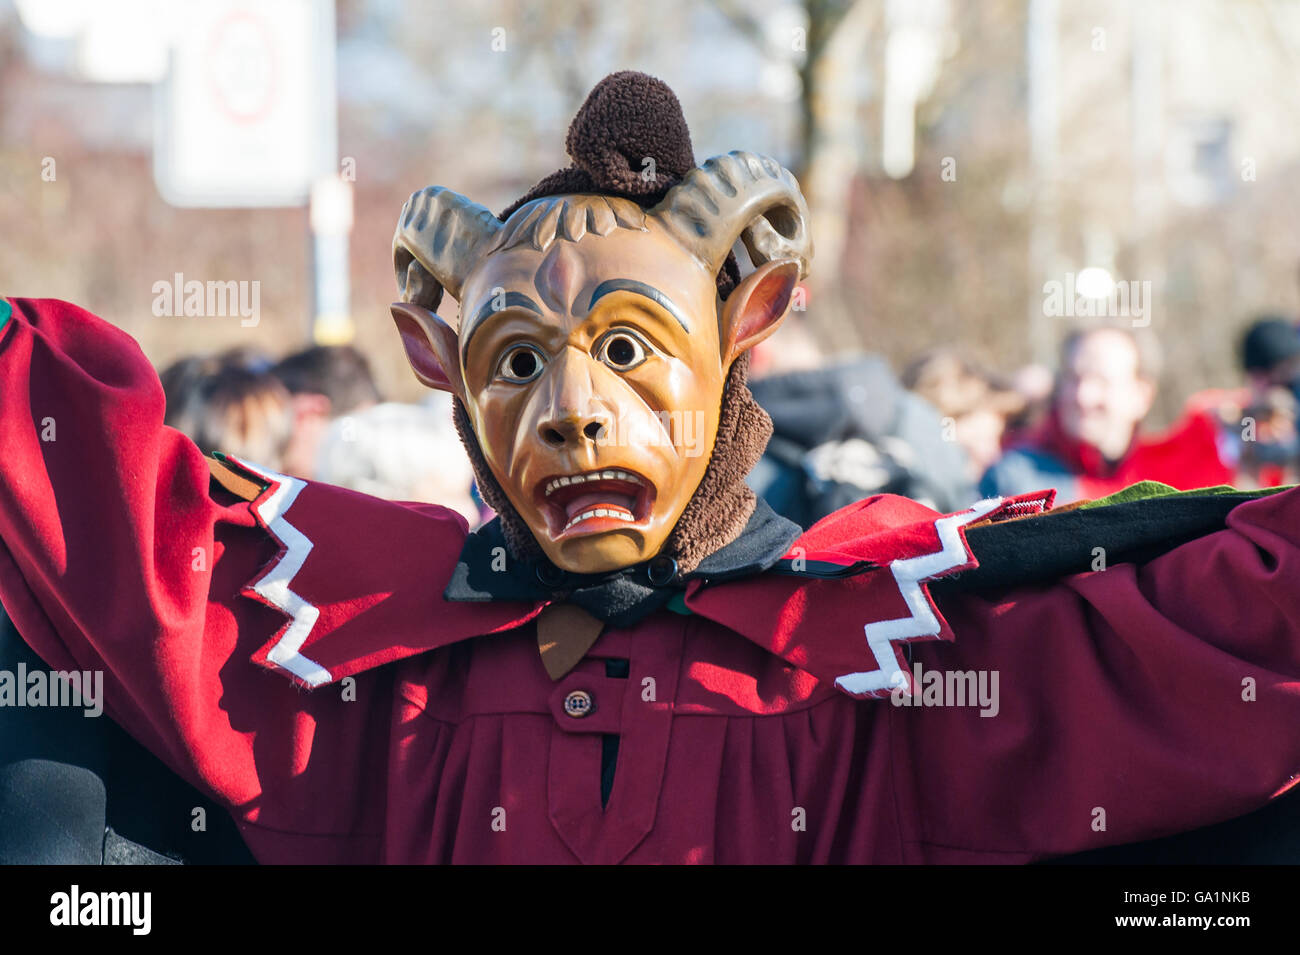 Herrenberg, Germania - 21 Febbraio 2012: Locale sfilata di carnevale con le tradizionali maschere in legno Foto Stock